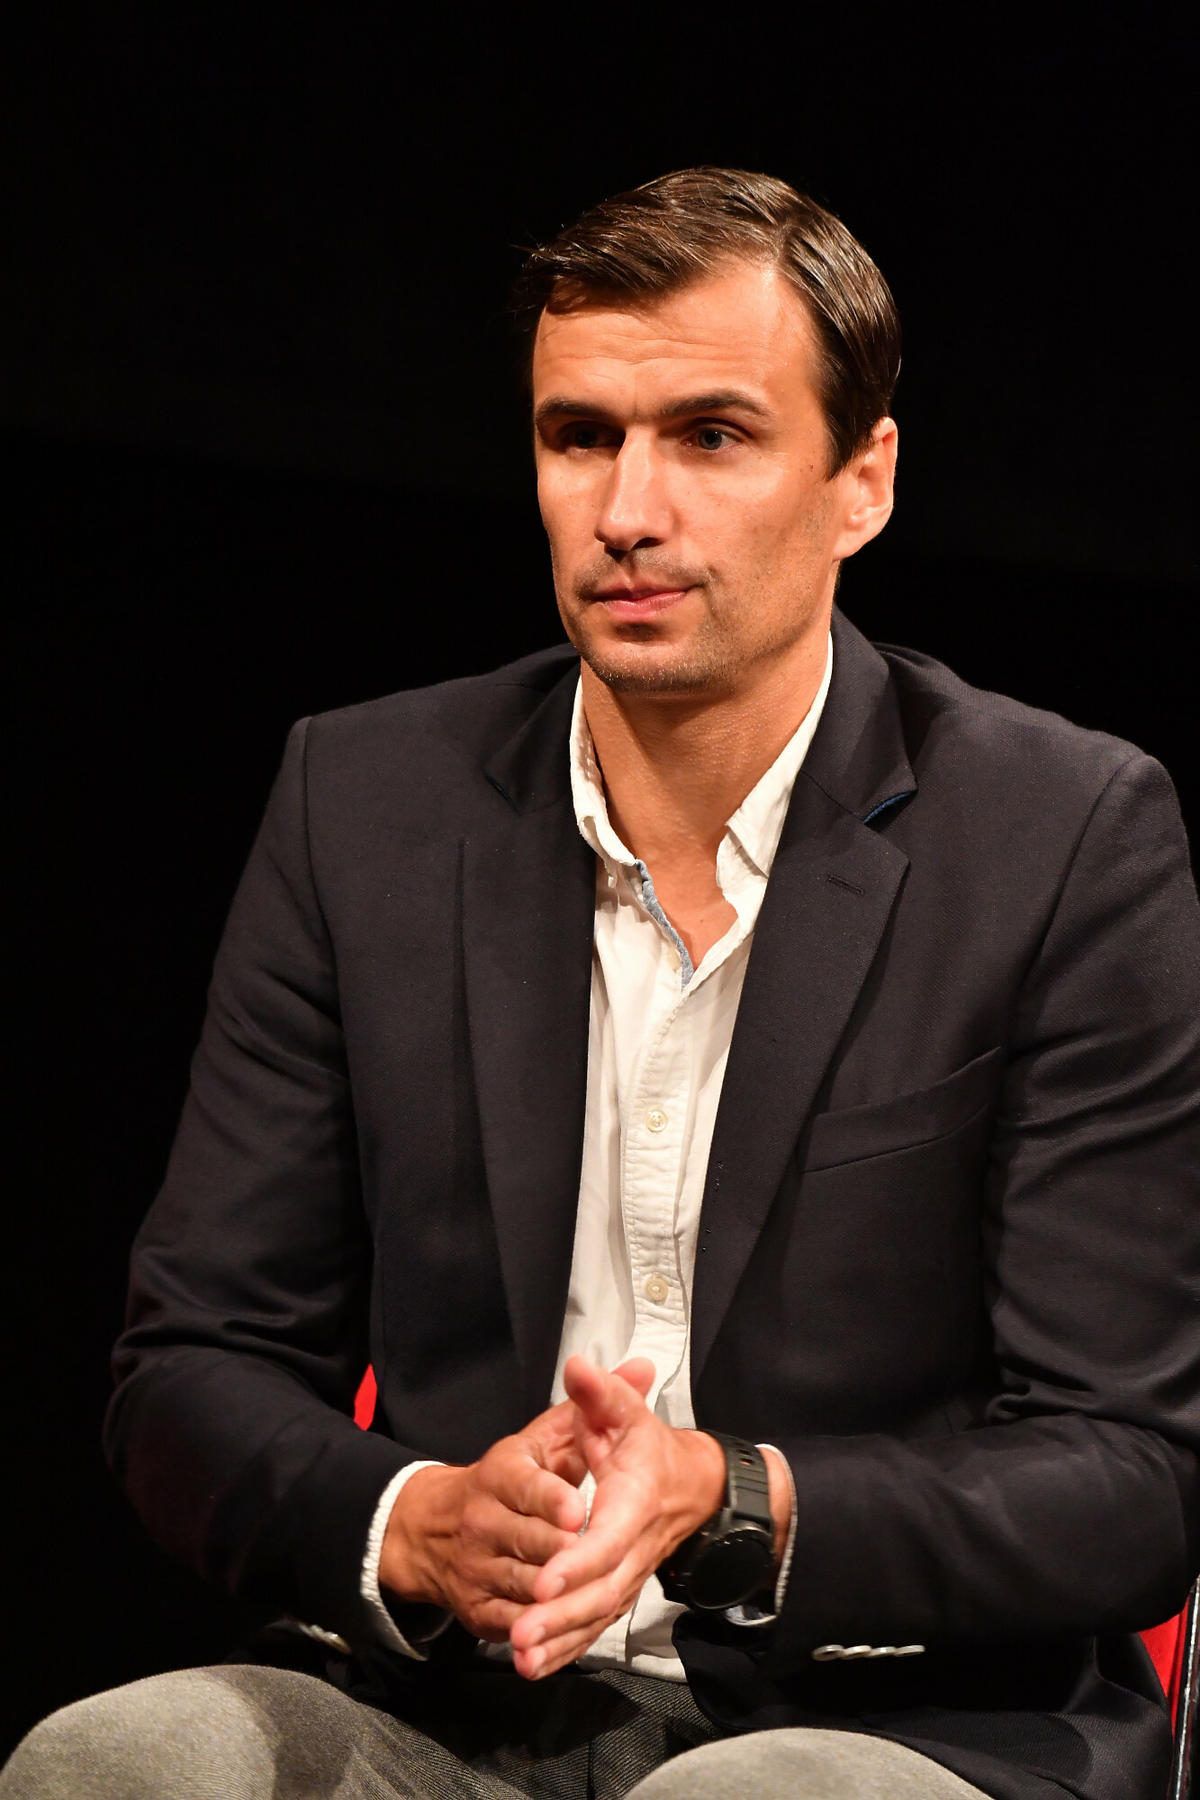 Jarosław Bieniuk na fotografii siedzi zamyślony po emisji filmu 